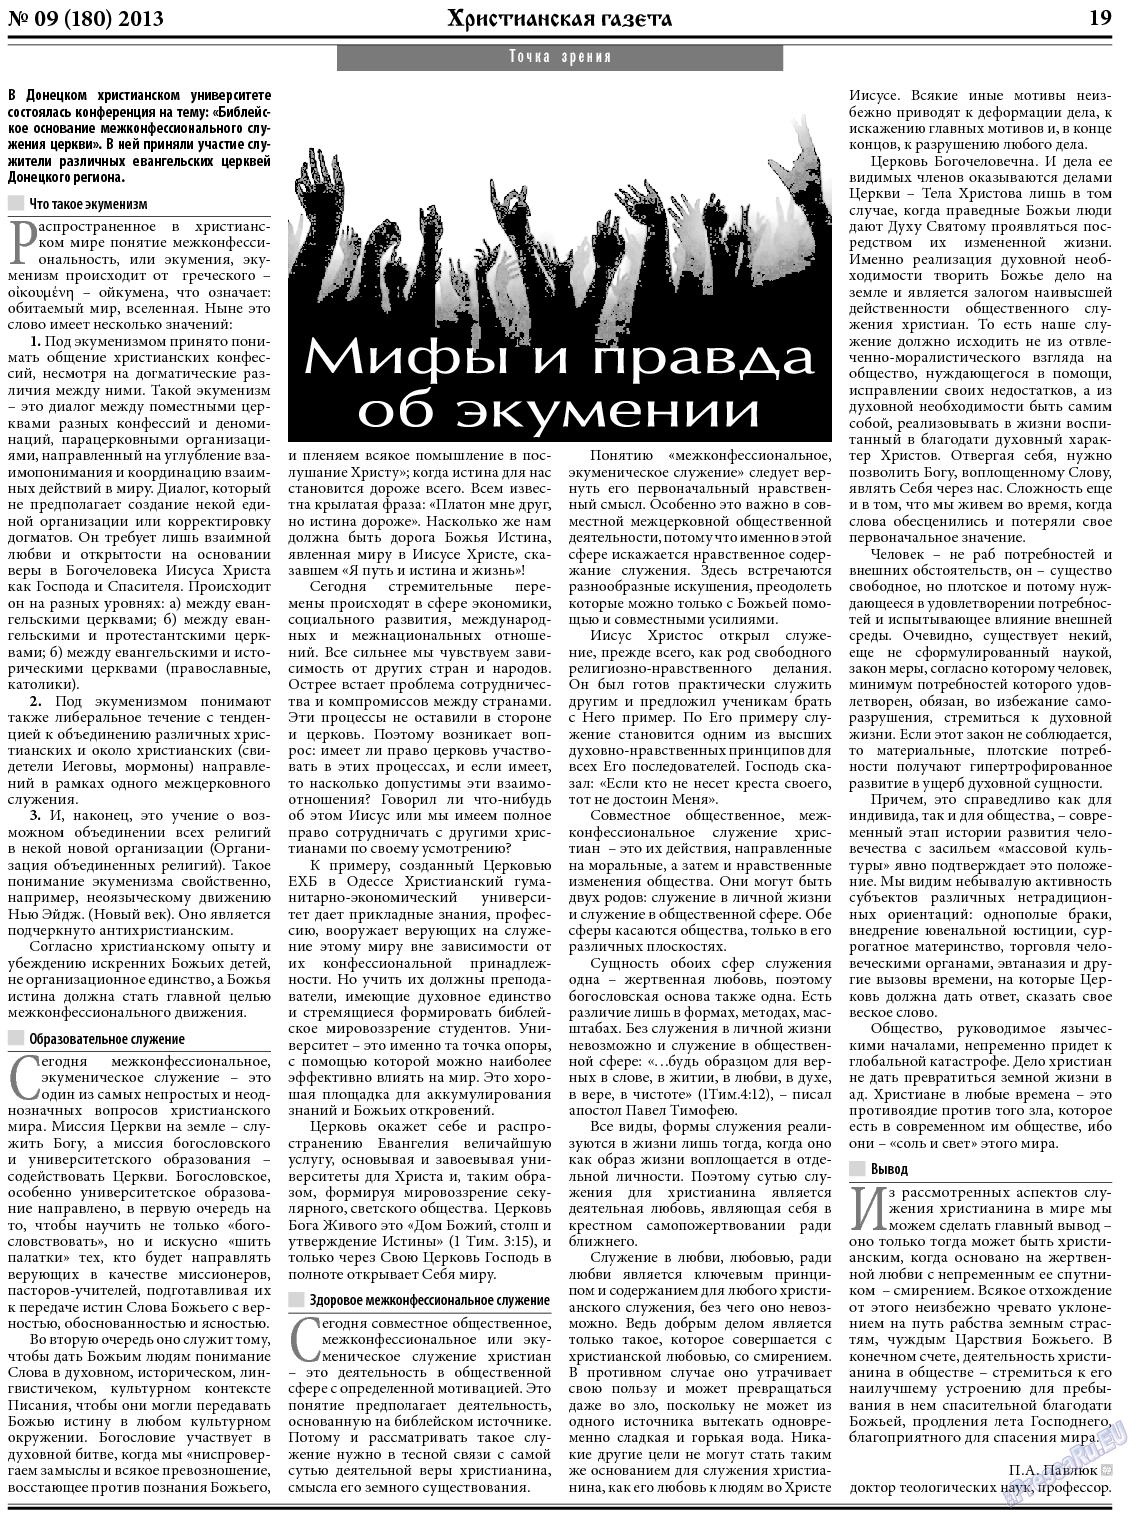 Христианская газета, газета. 2013 №9 стр.27